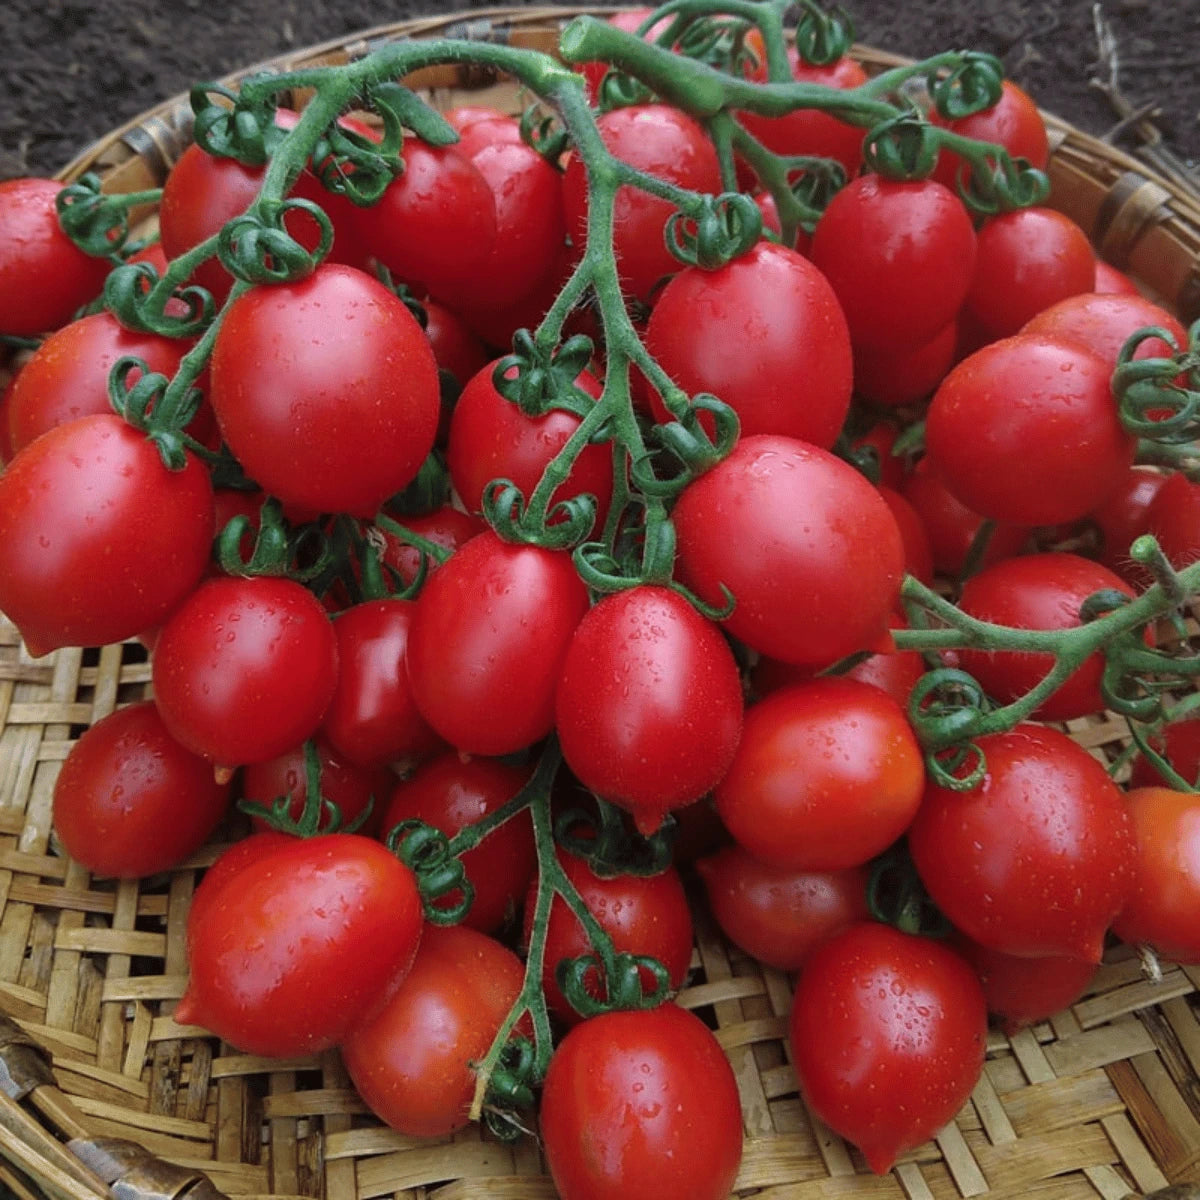 Principe Borghese Tomatoes